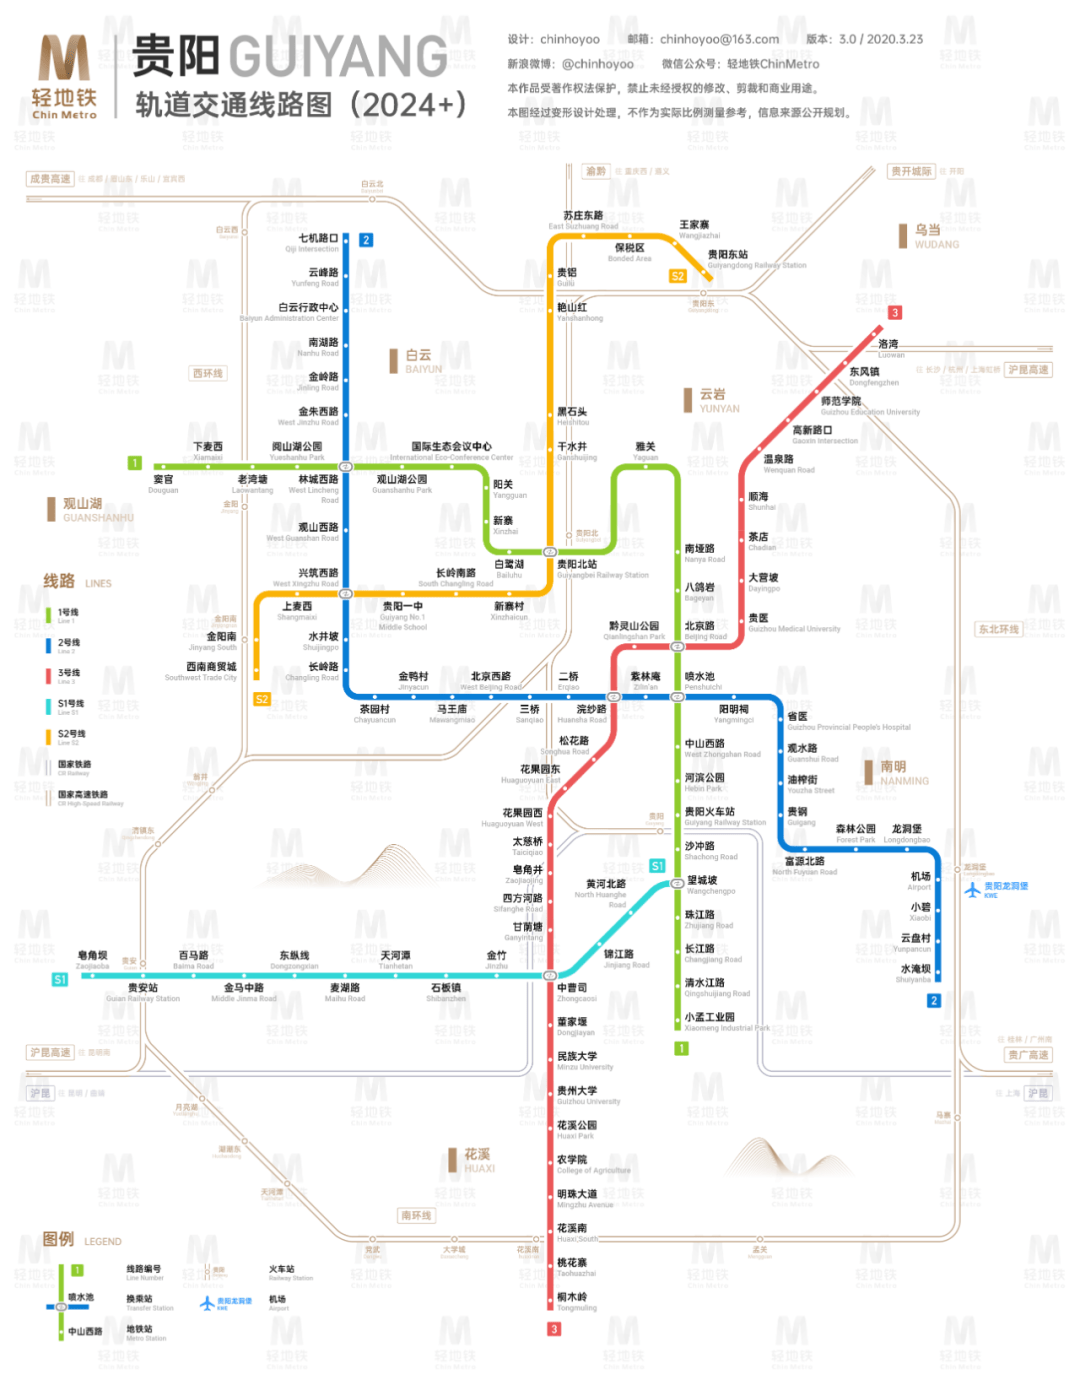 开通运营线路2条,包括1号线,2号线.线路采用地铁系统,里程总长71.